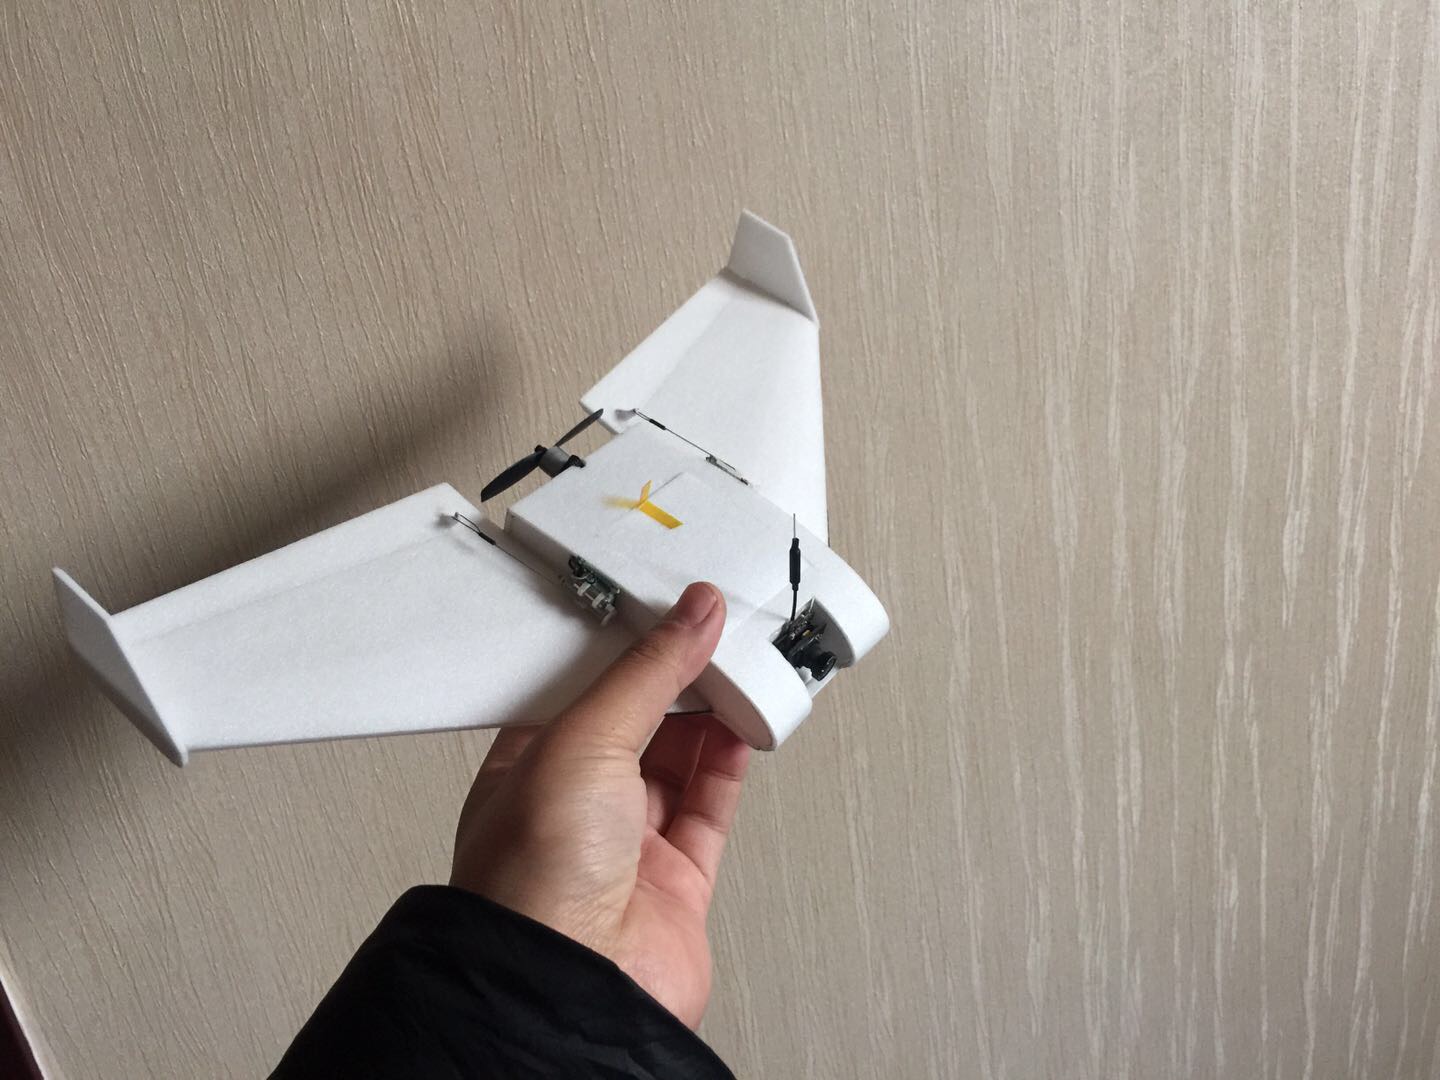 冷落了的小飞机 小飞机纸飞机,小飞机怎么叠,飞机小制作,回旋小飞机,小飞机配件 作者:空小白 8716 